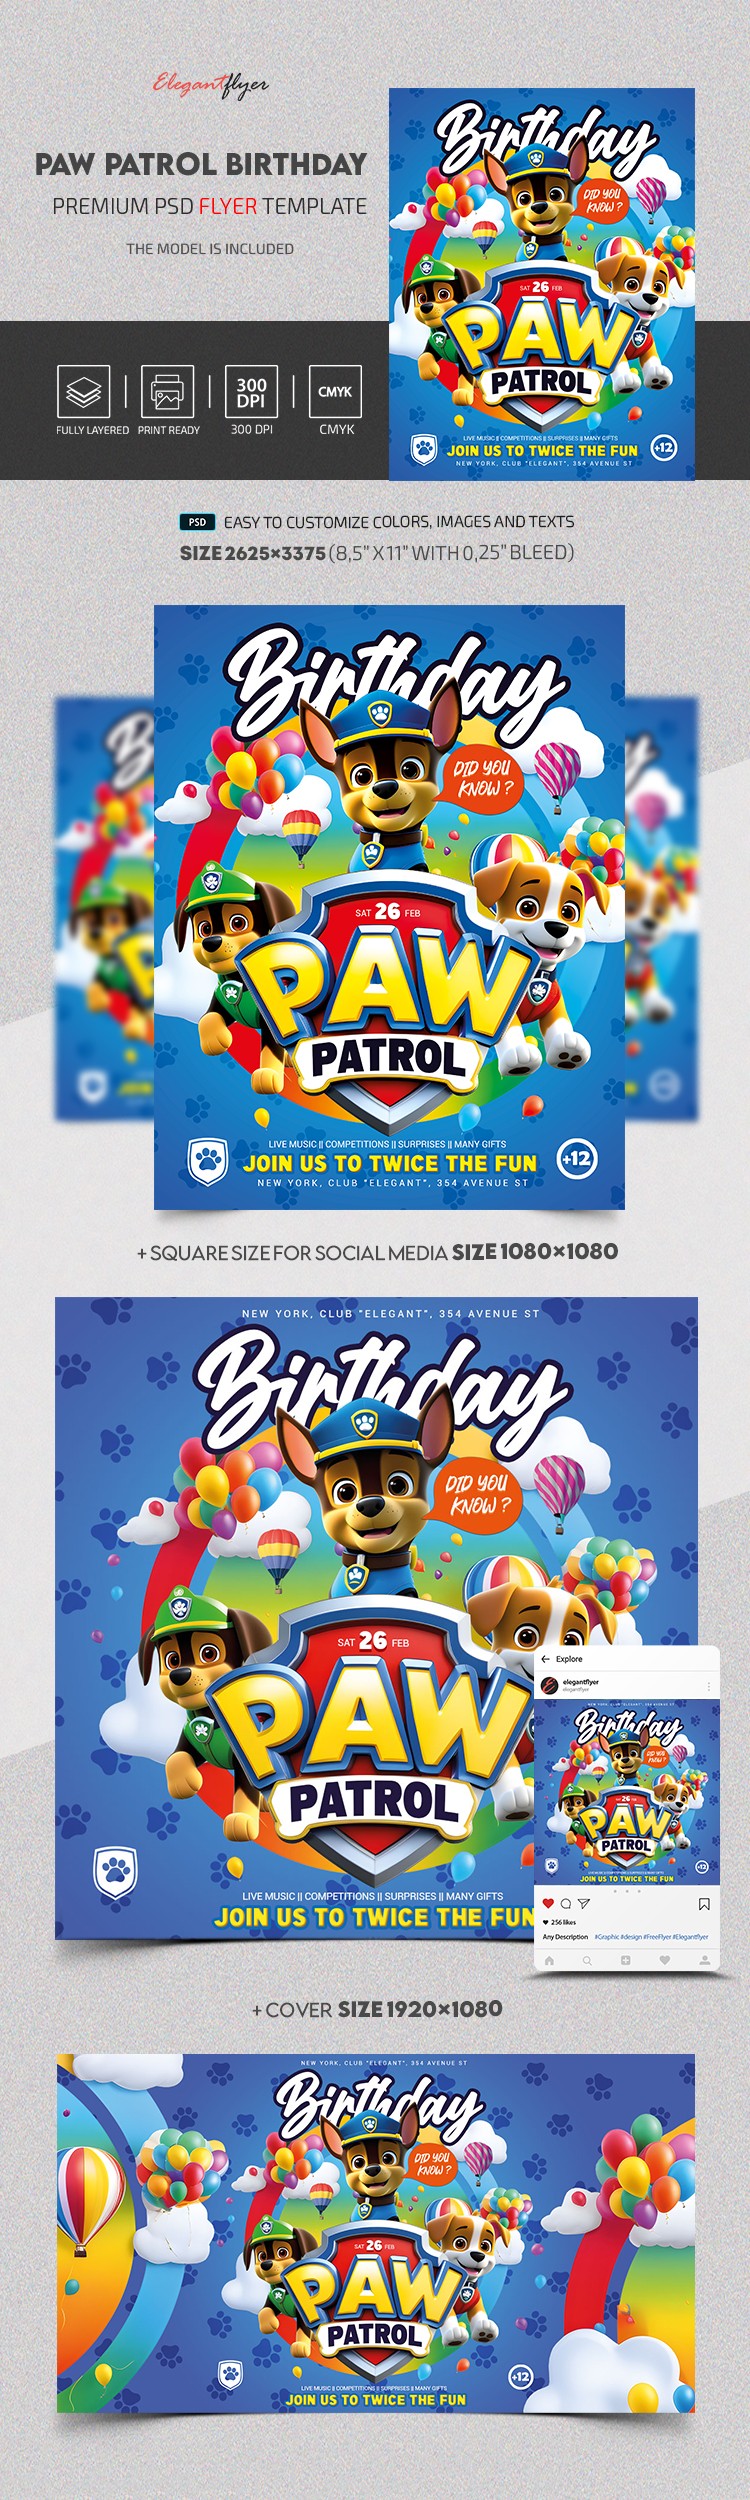 Paw Patrol Birthday by ElegantFlyer